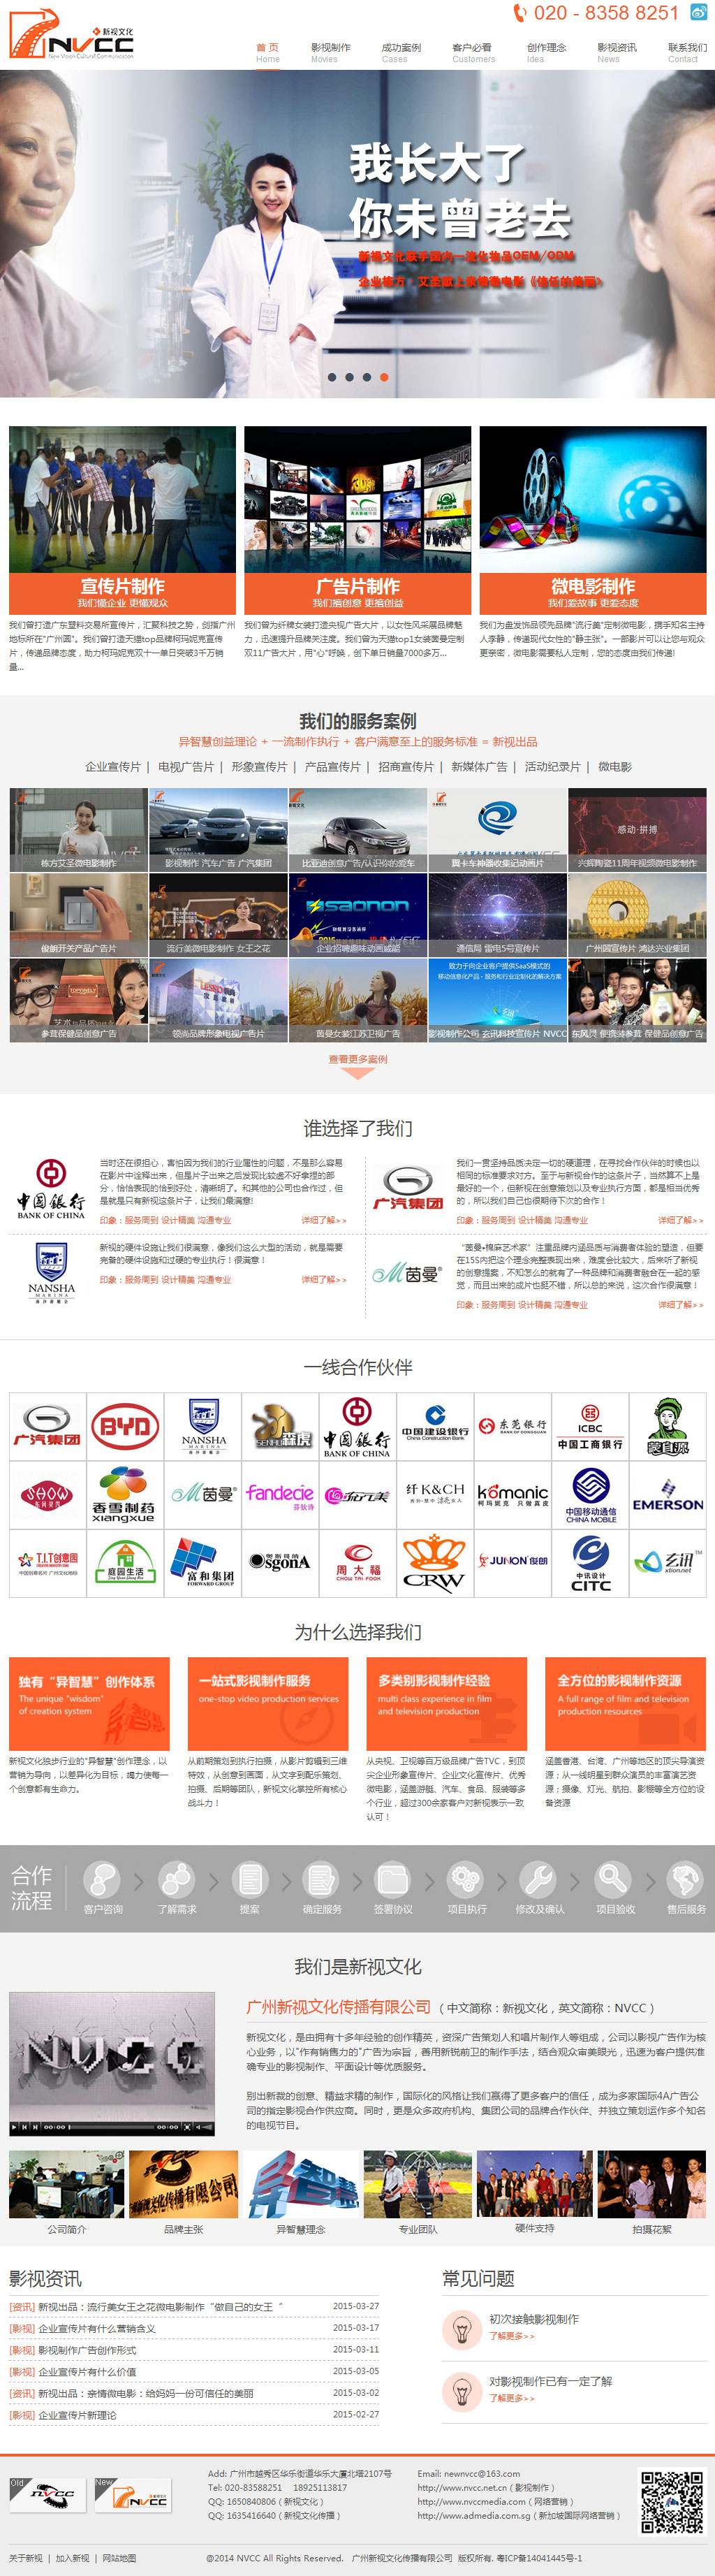 新视文化传播,佰牛网络,影视网站建设,深圳网站建设公司